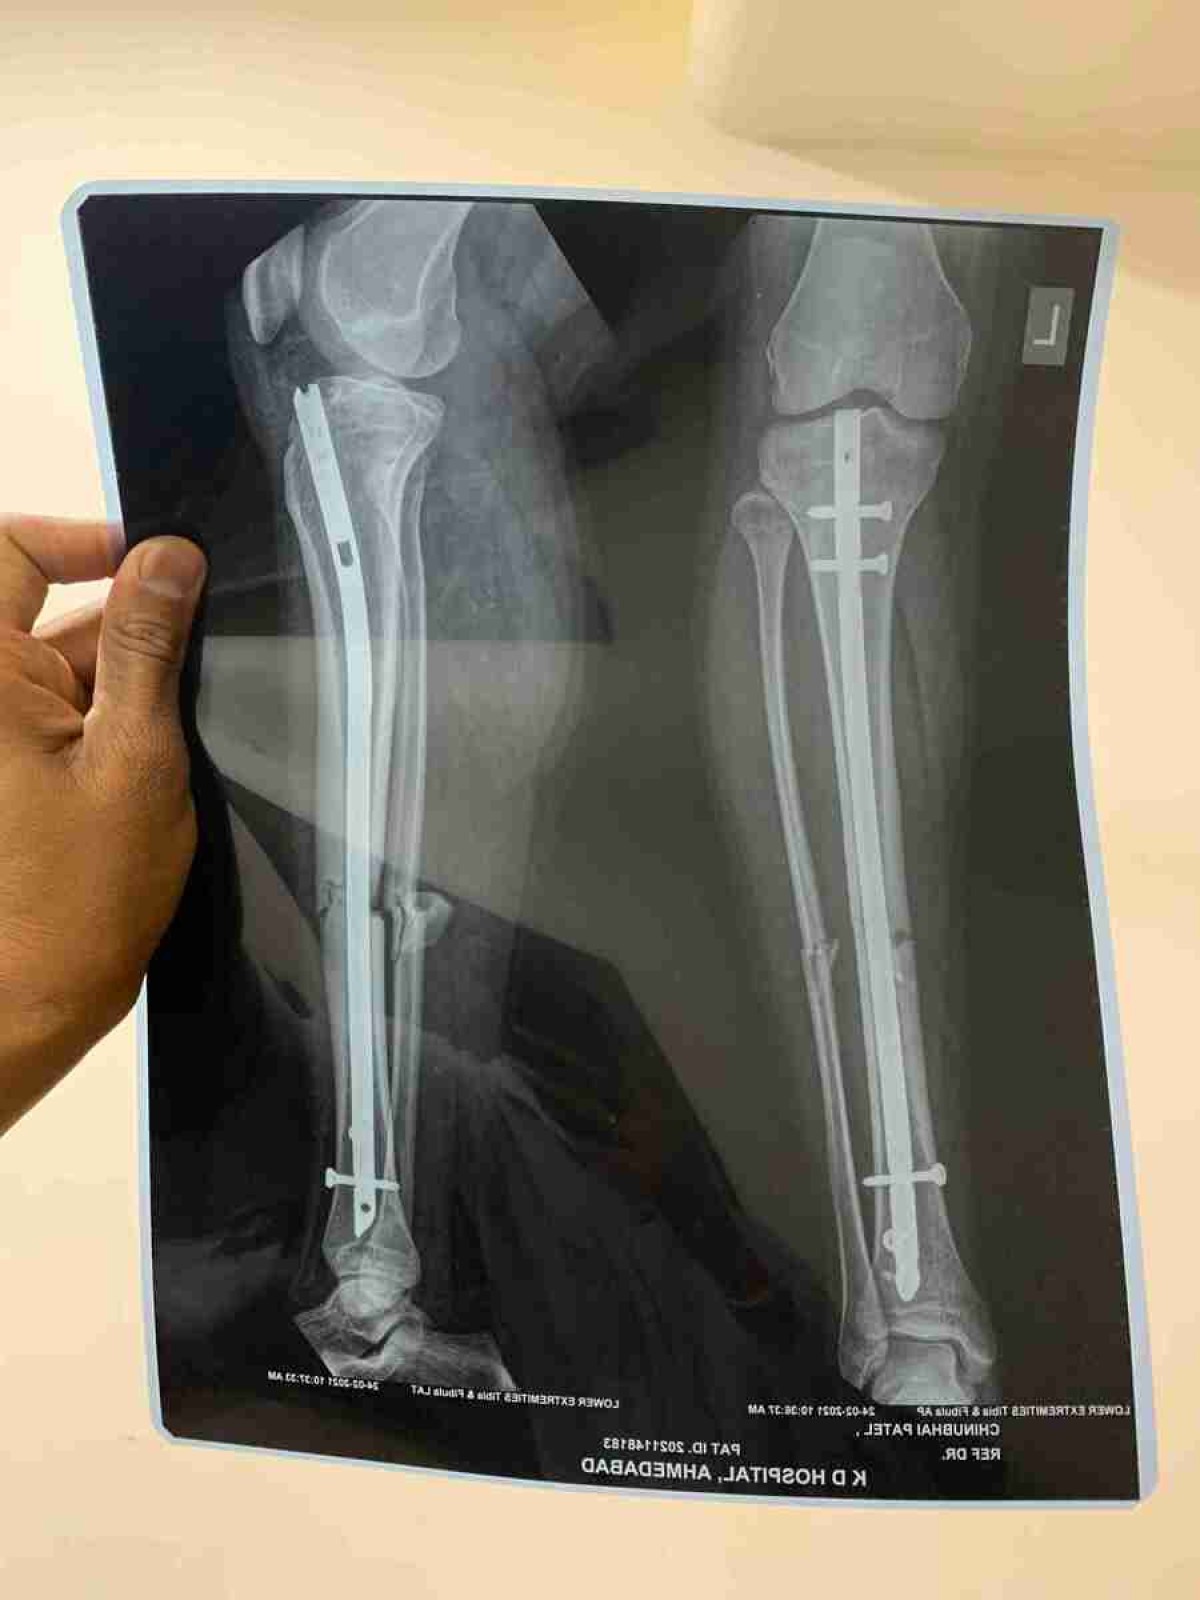 Menina de 6 anos cai de bicicleta e médicos colocam pino em perna errada